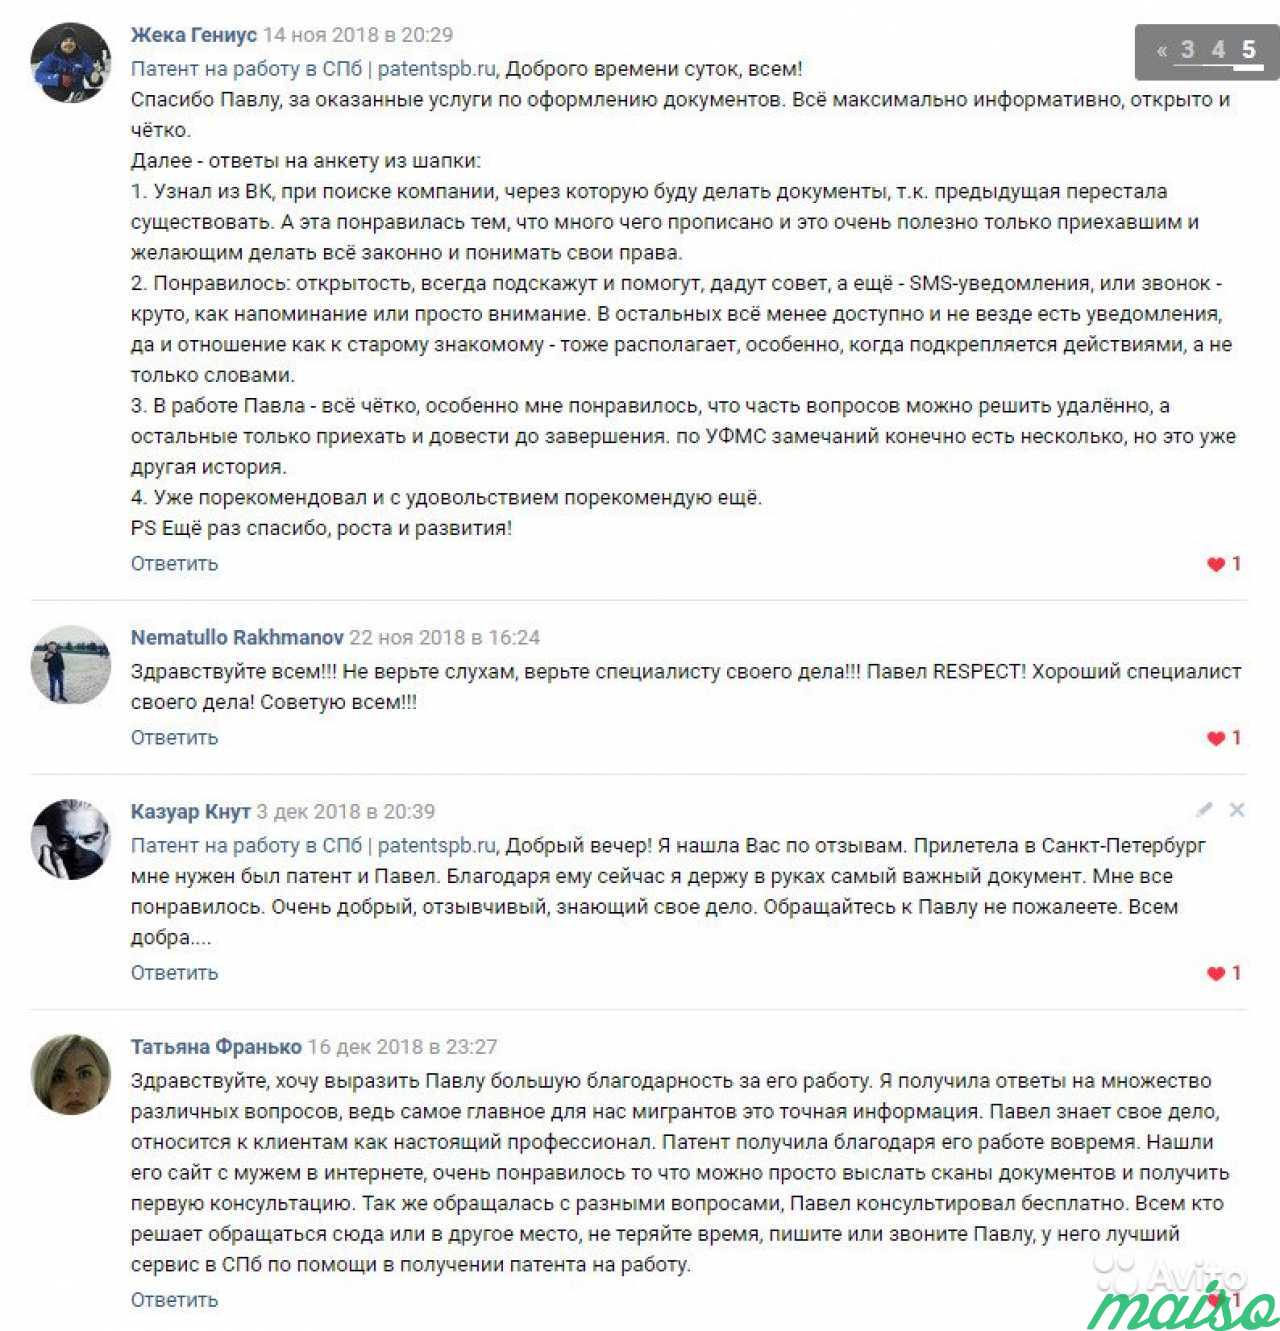 Патент на работу в спб. Более 90 отзывов в вк в Санкт-Петербурге. Фото 10